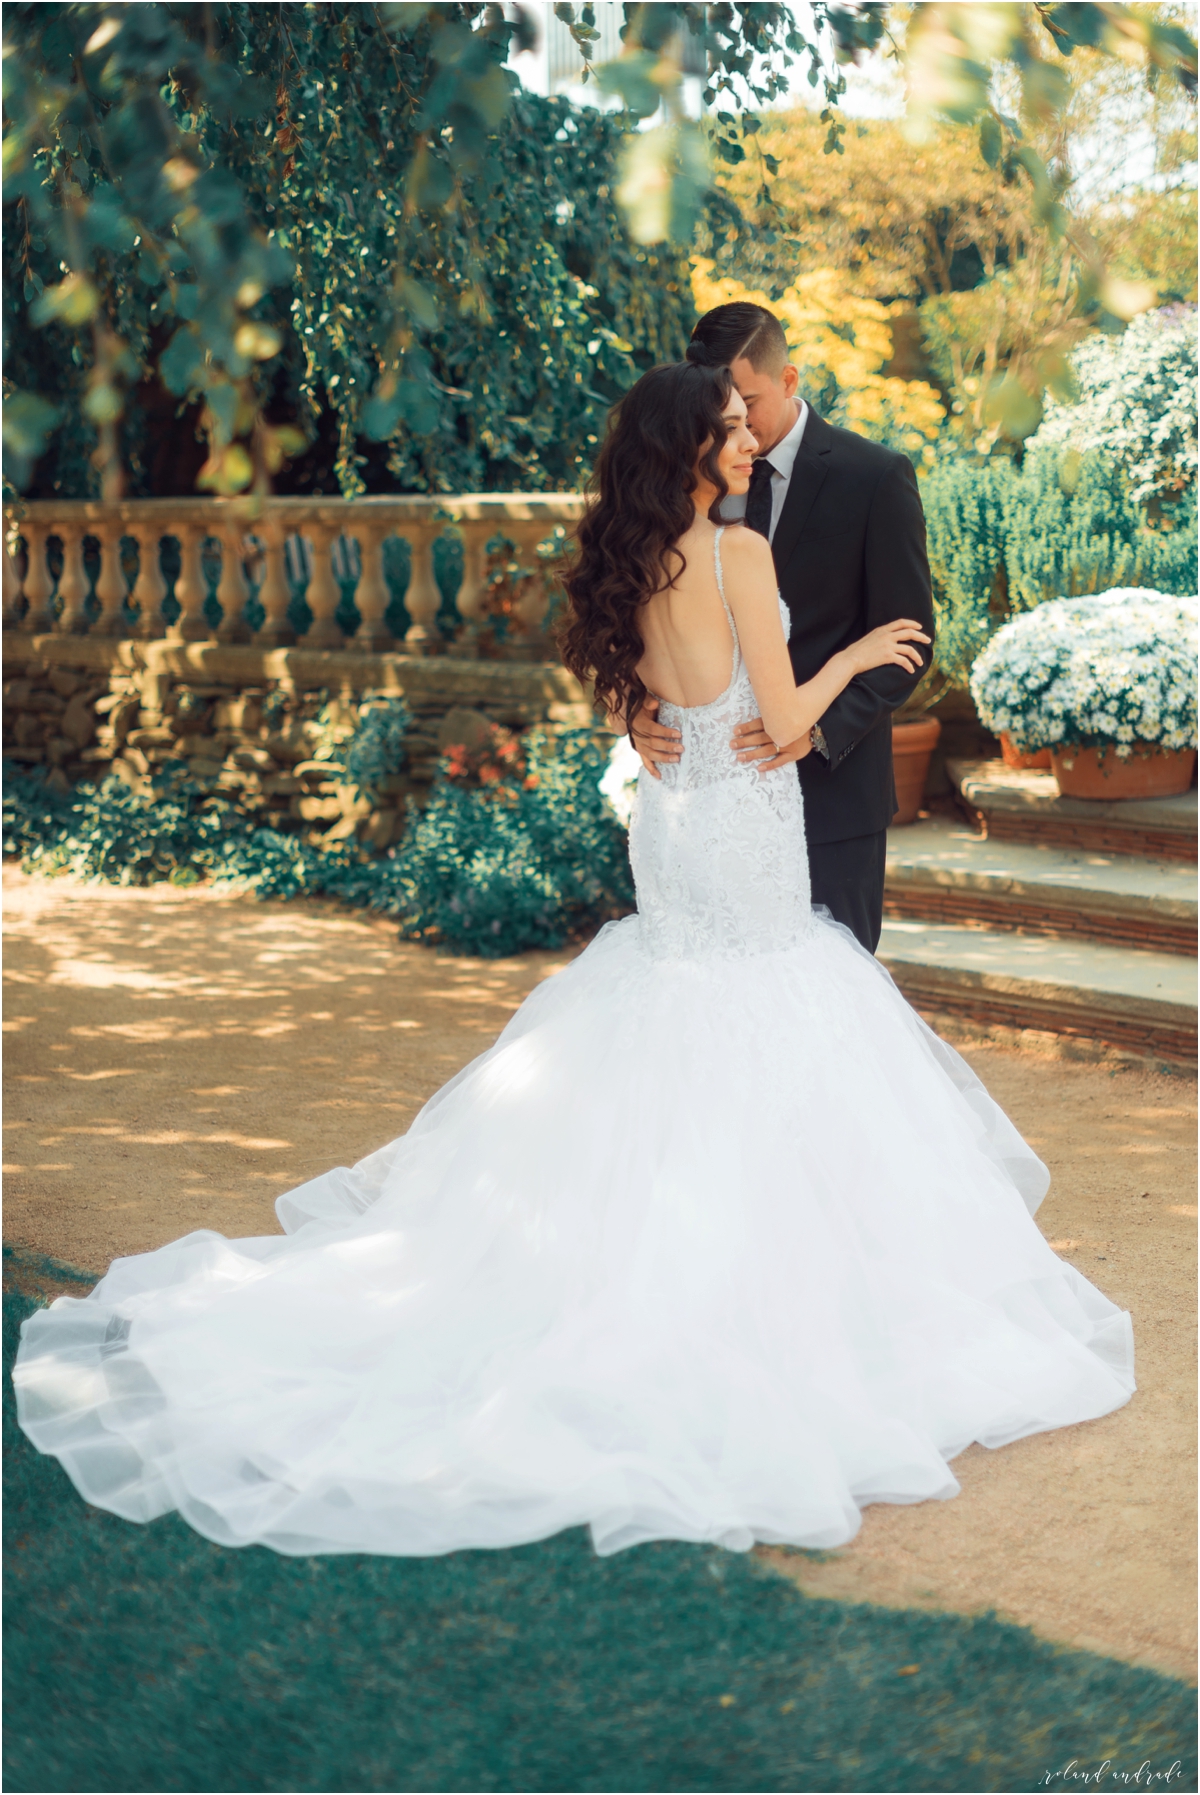 Mayra + Julian Chicago Botanic Garden Bridal Photography Chicago Wedding Photography Photographer2.jpg